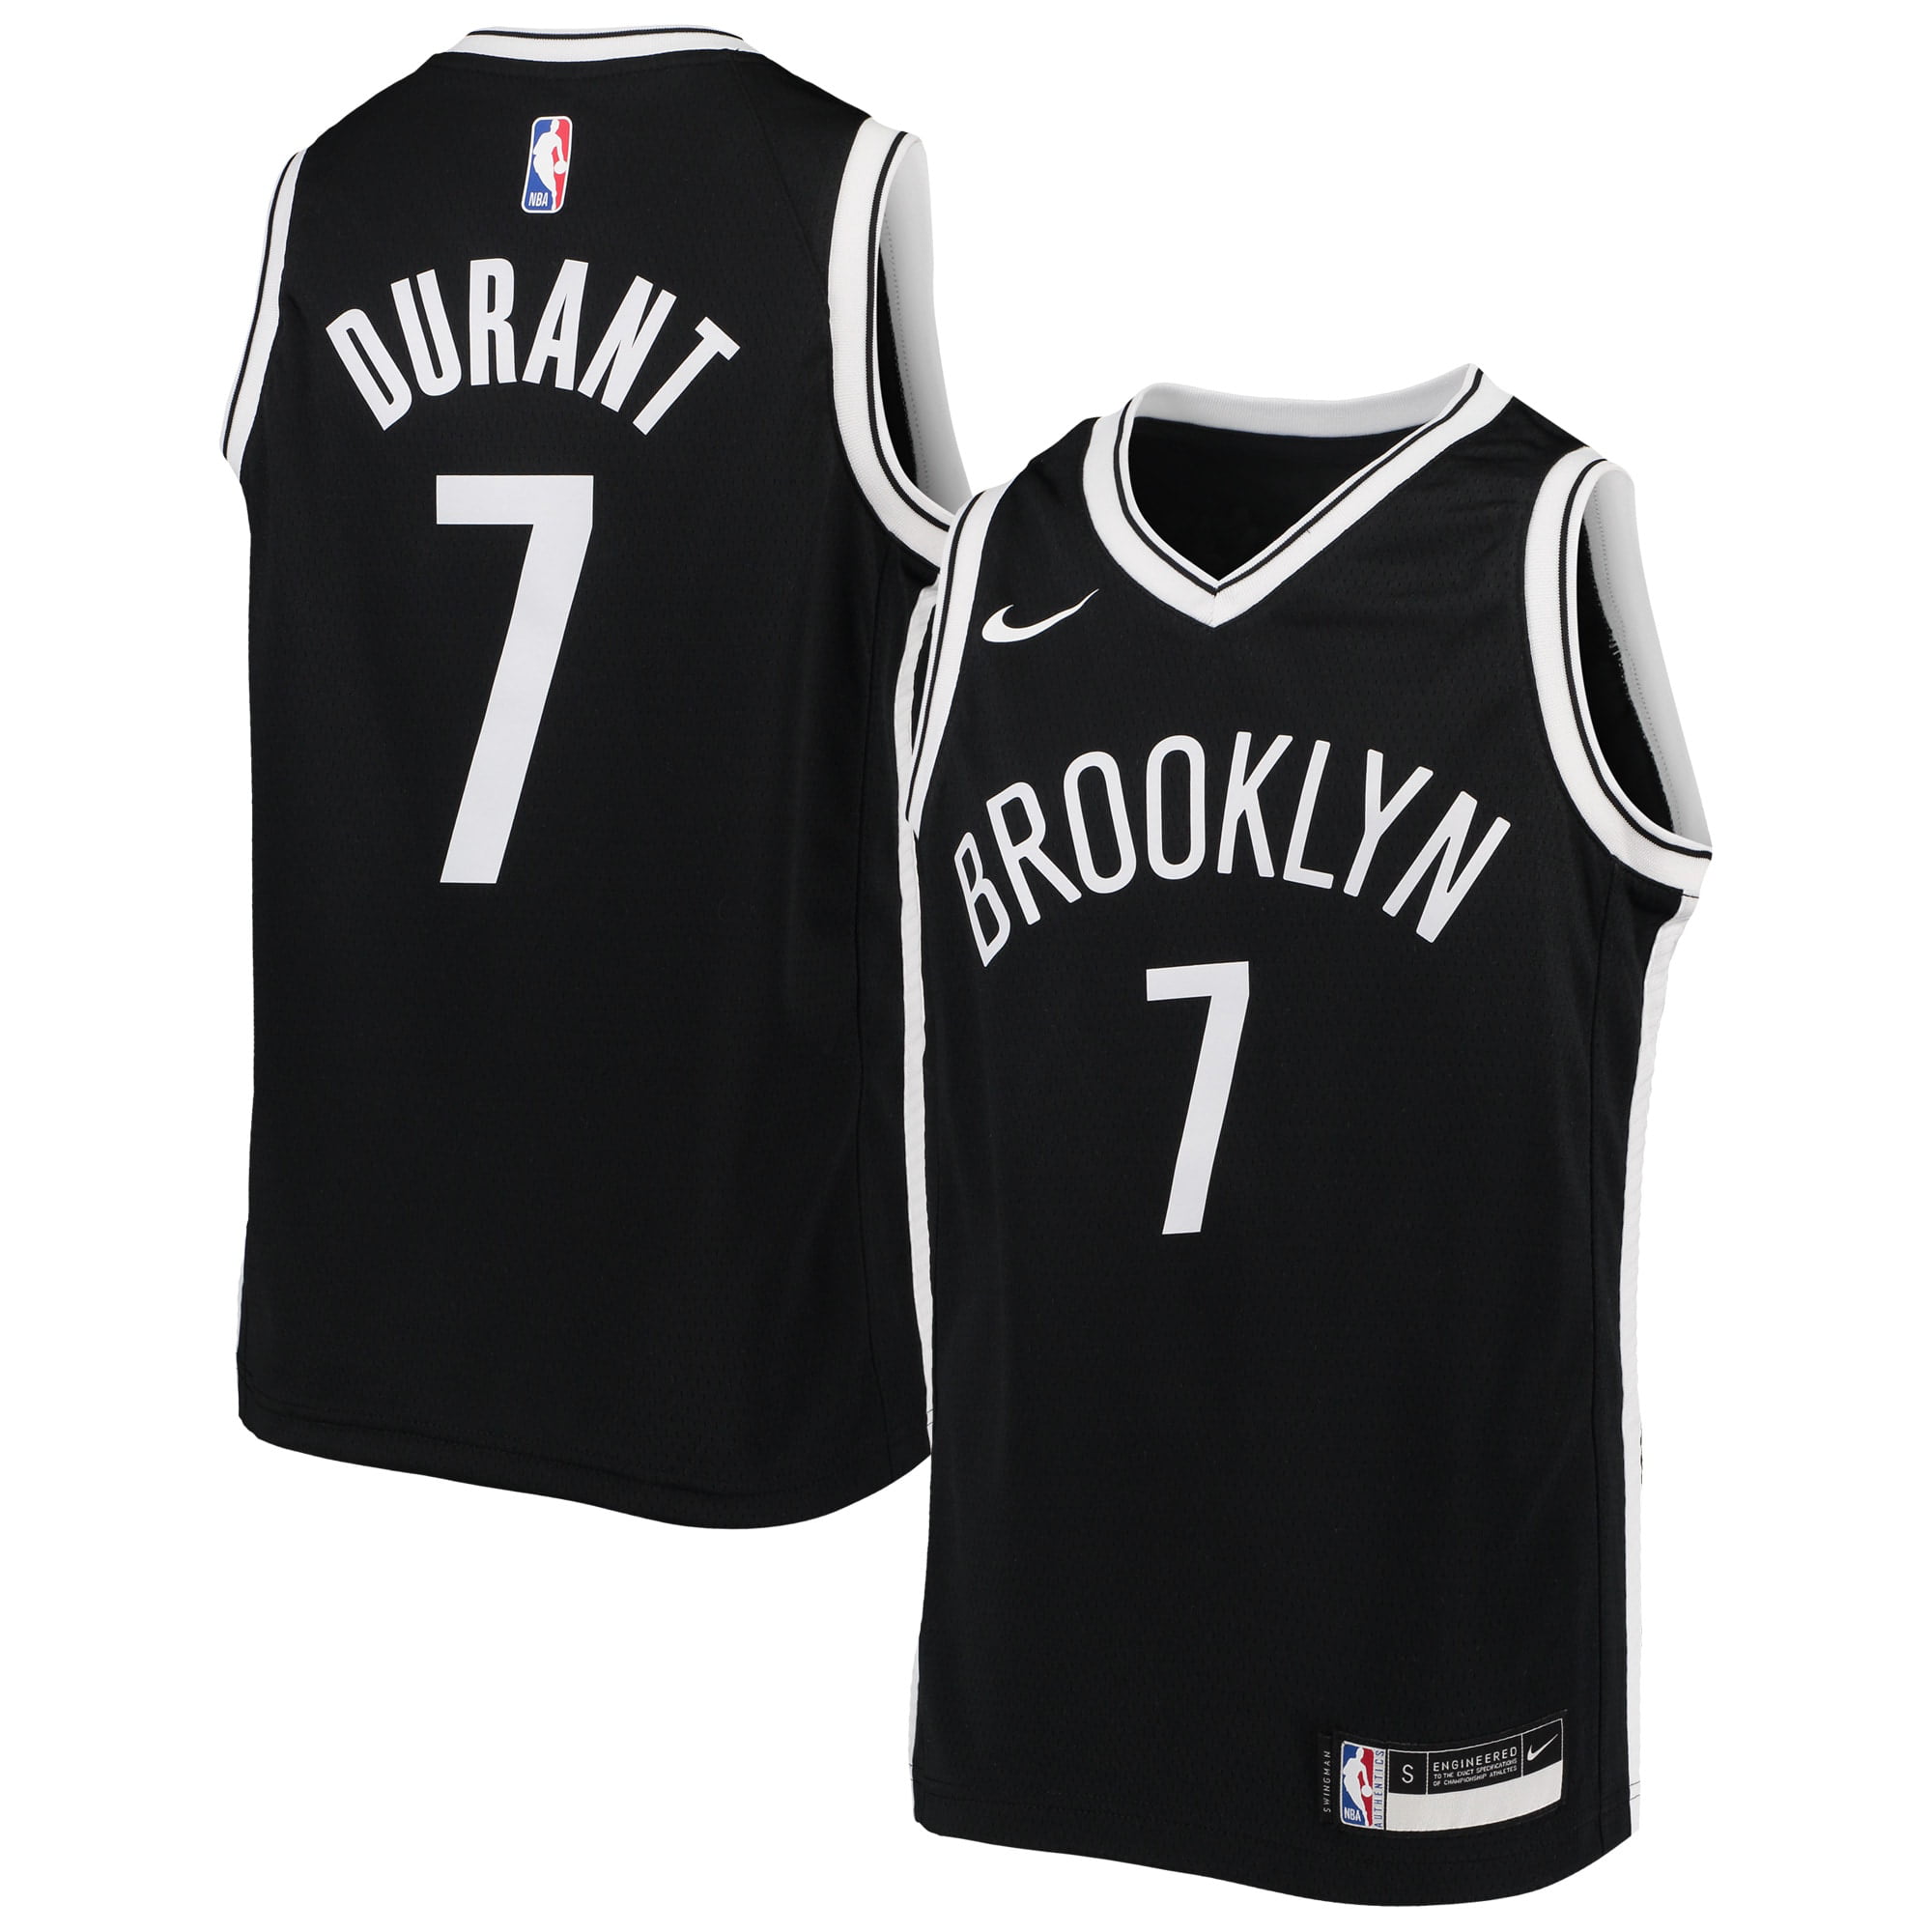 î€€Kevinî€ î€€Durantî€ Brooklyn Nets Nike Youth Swingman î€€Jerseyî€ - Icon Edition - Black - Walmart.com ...